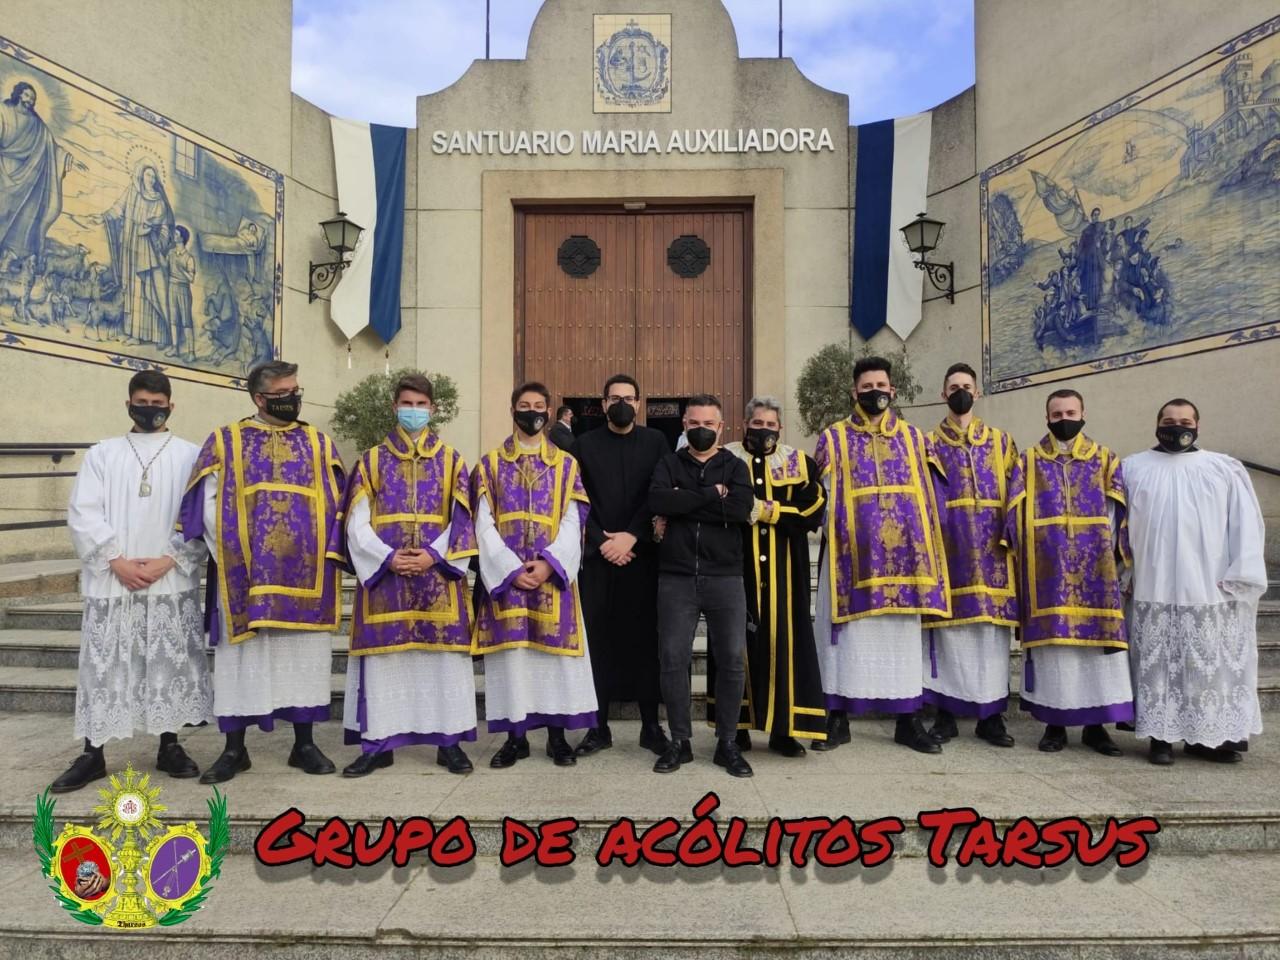 Misa en honor de San Tarcisio, mártir de la Eucaristía